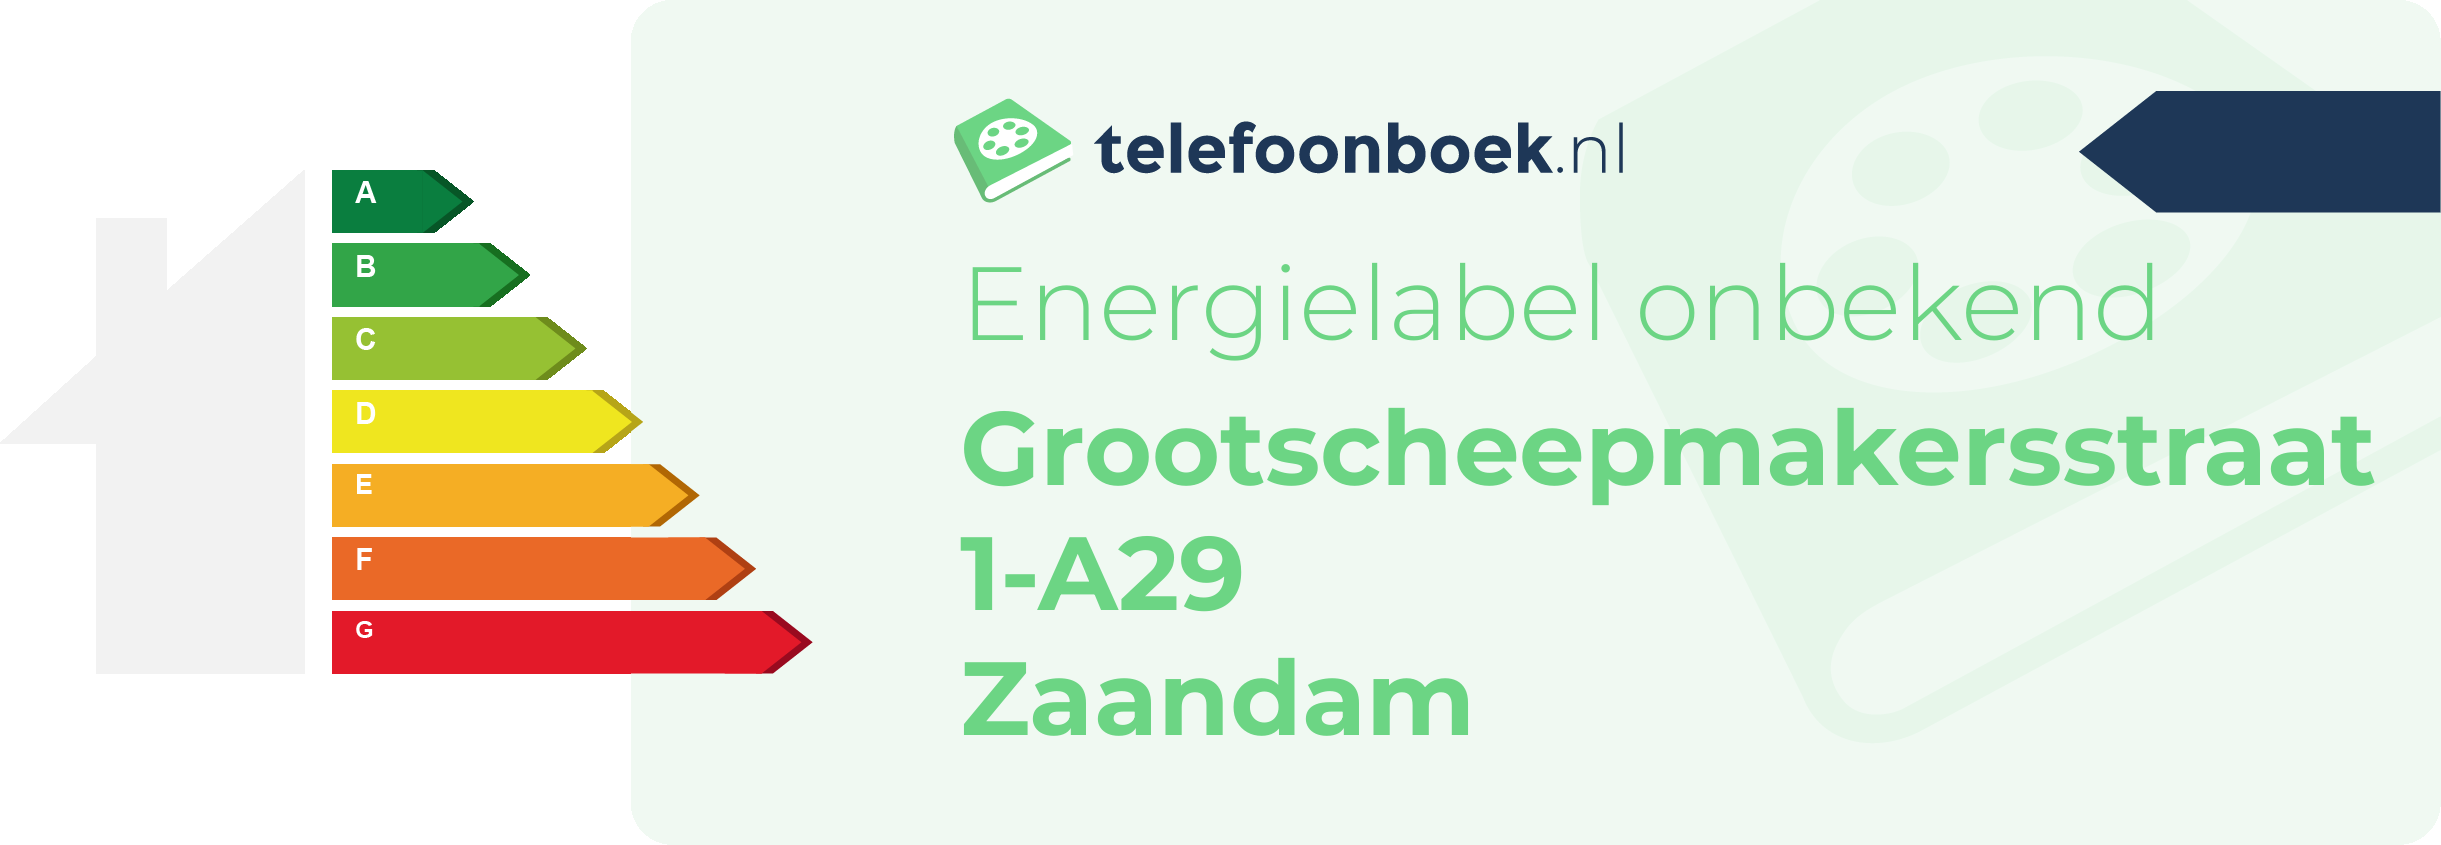 Energielabel Grootscheepmakersstraat 1-A29 Zaandam